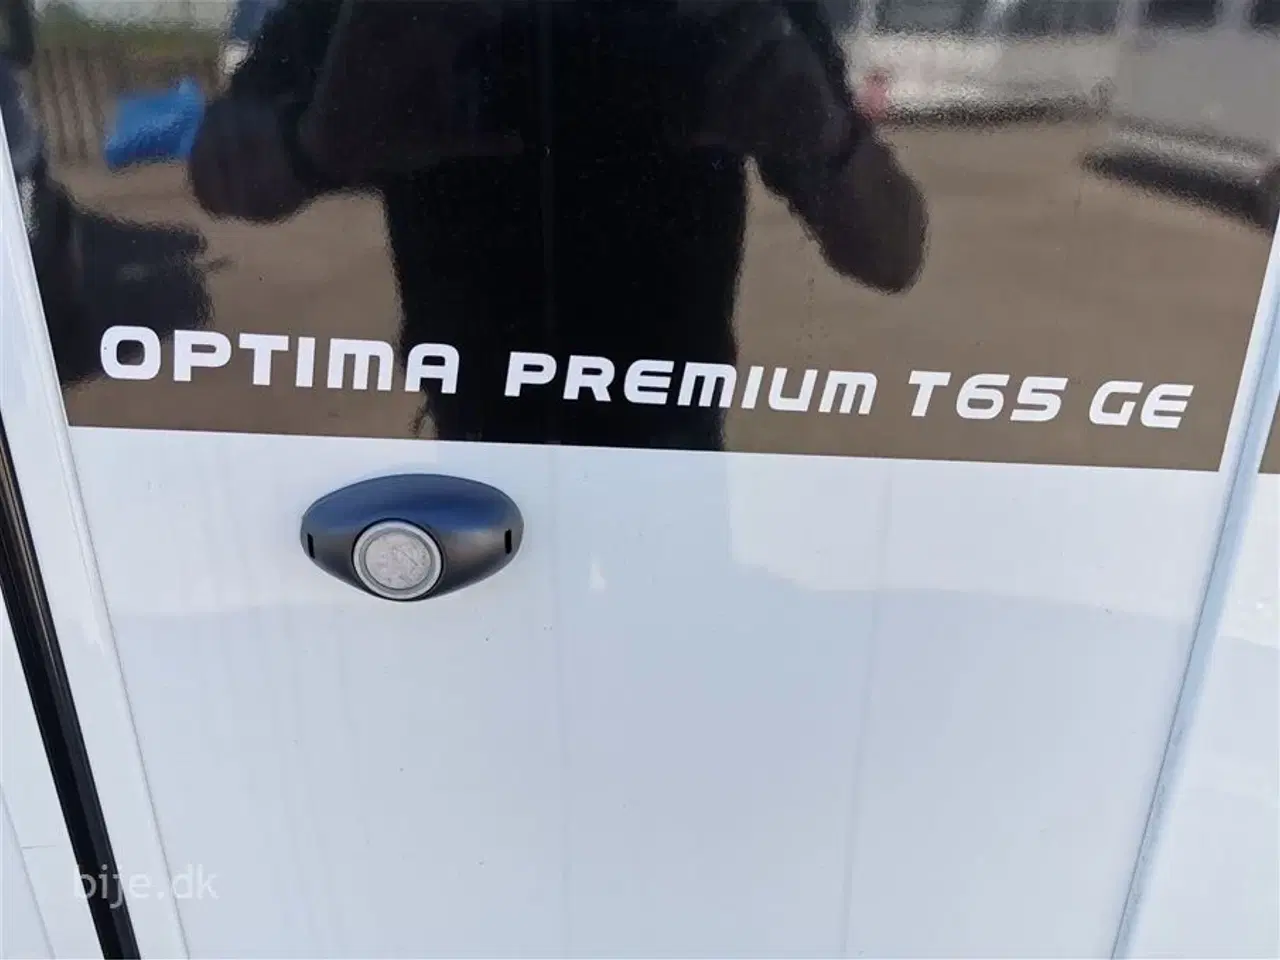 Billede 15 - 2019 - Hobby Optima Premium T65 GE   Hobby Optima Premium T65 GE er en populær autocampermodel fra den tyske producent Hobby. Denne model er kendt for sin høje kvalitet, komfort og praktiske layout.